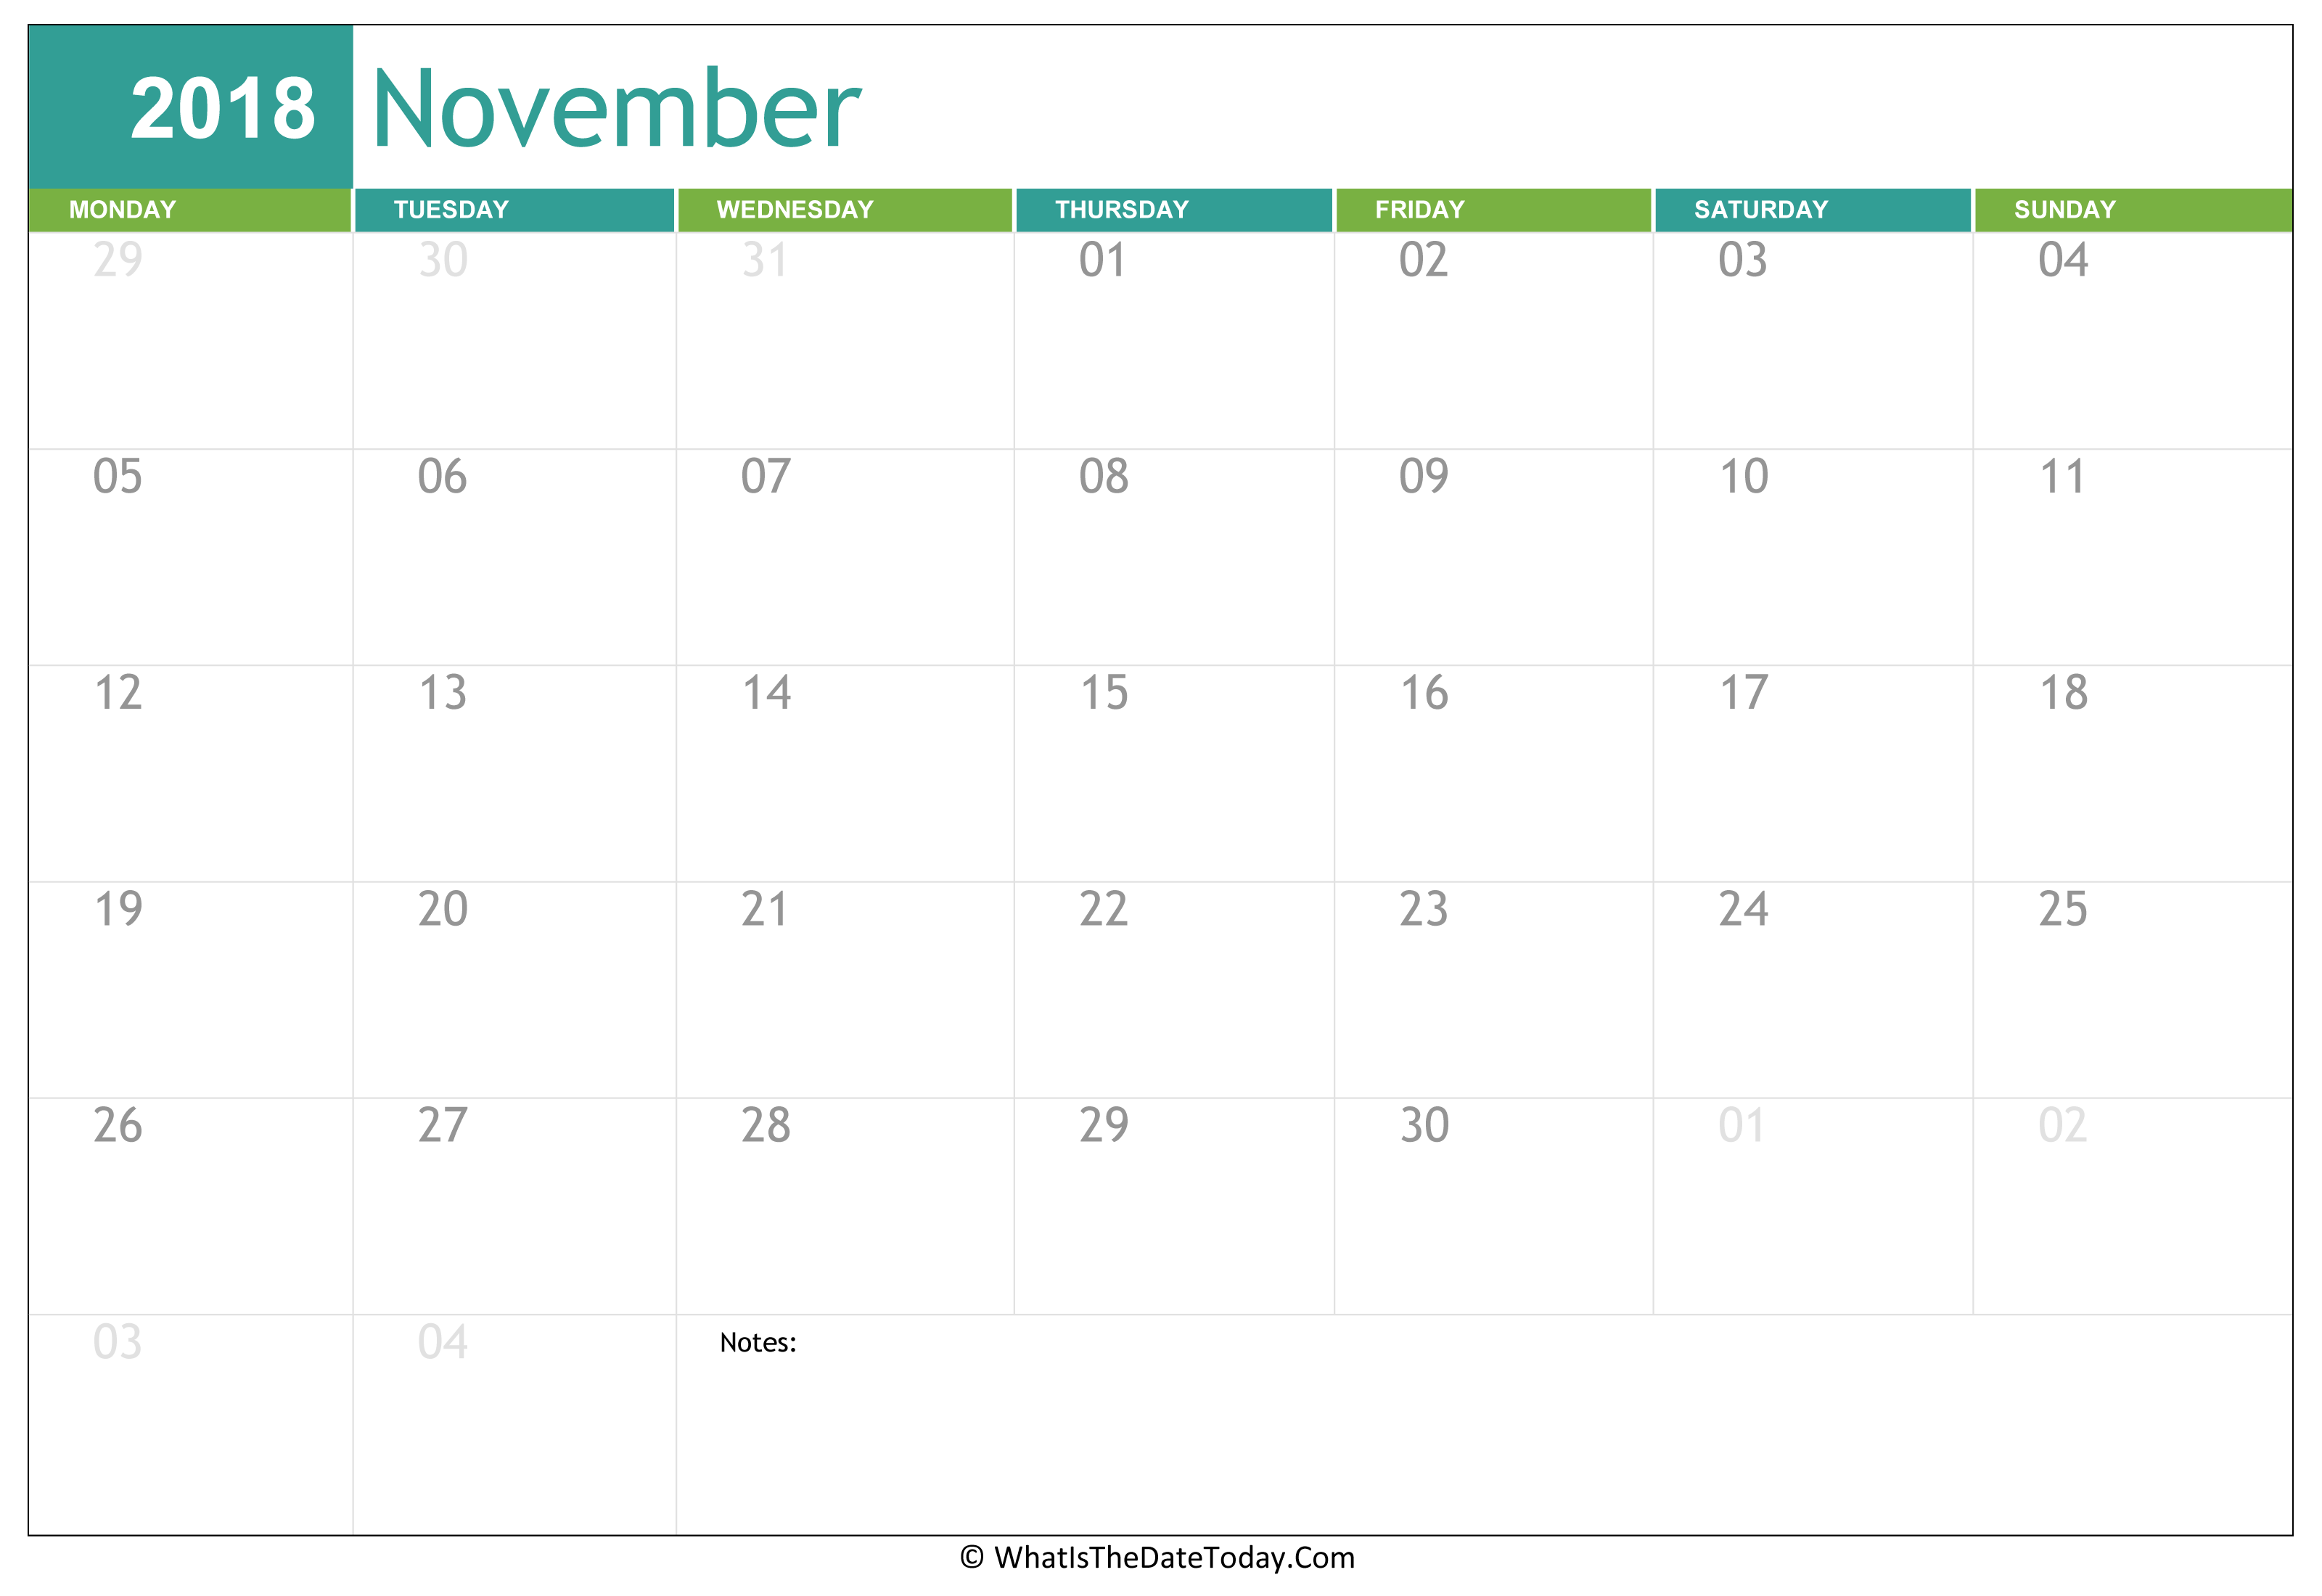 fillable-november-calendar-2018-whatisthedatetoday-com